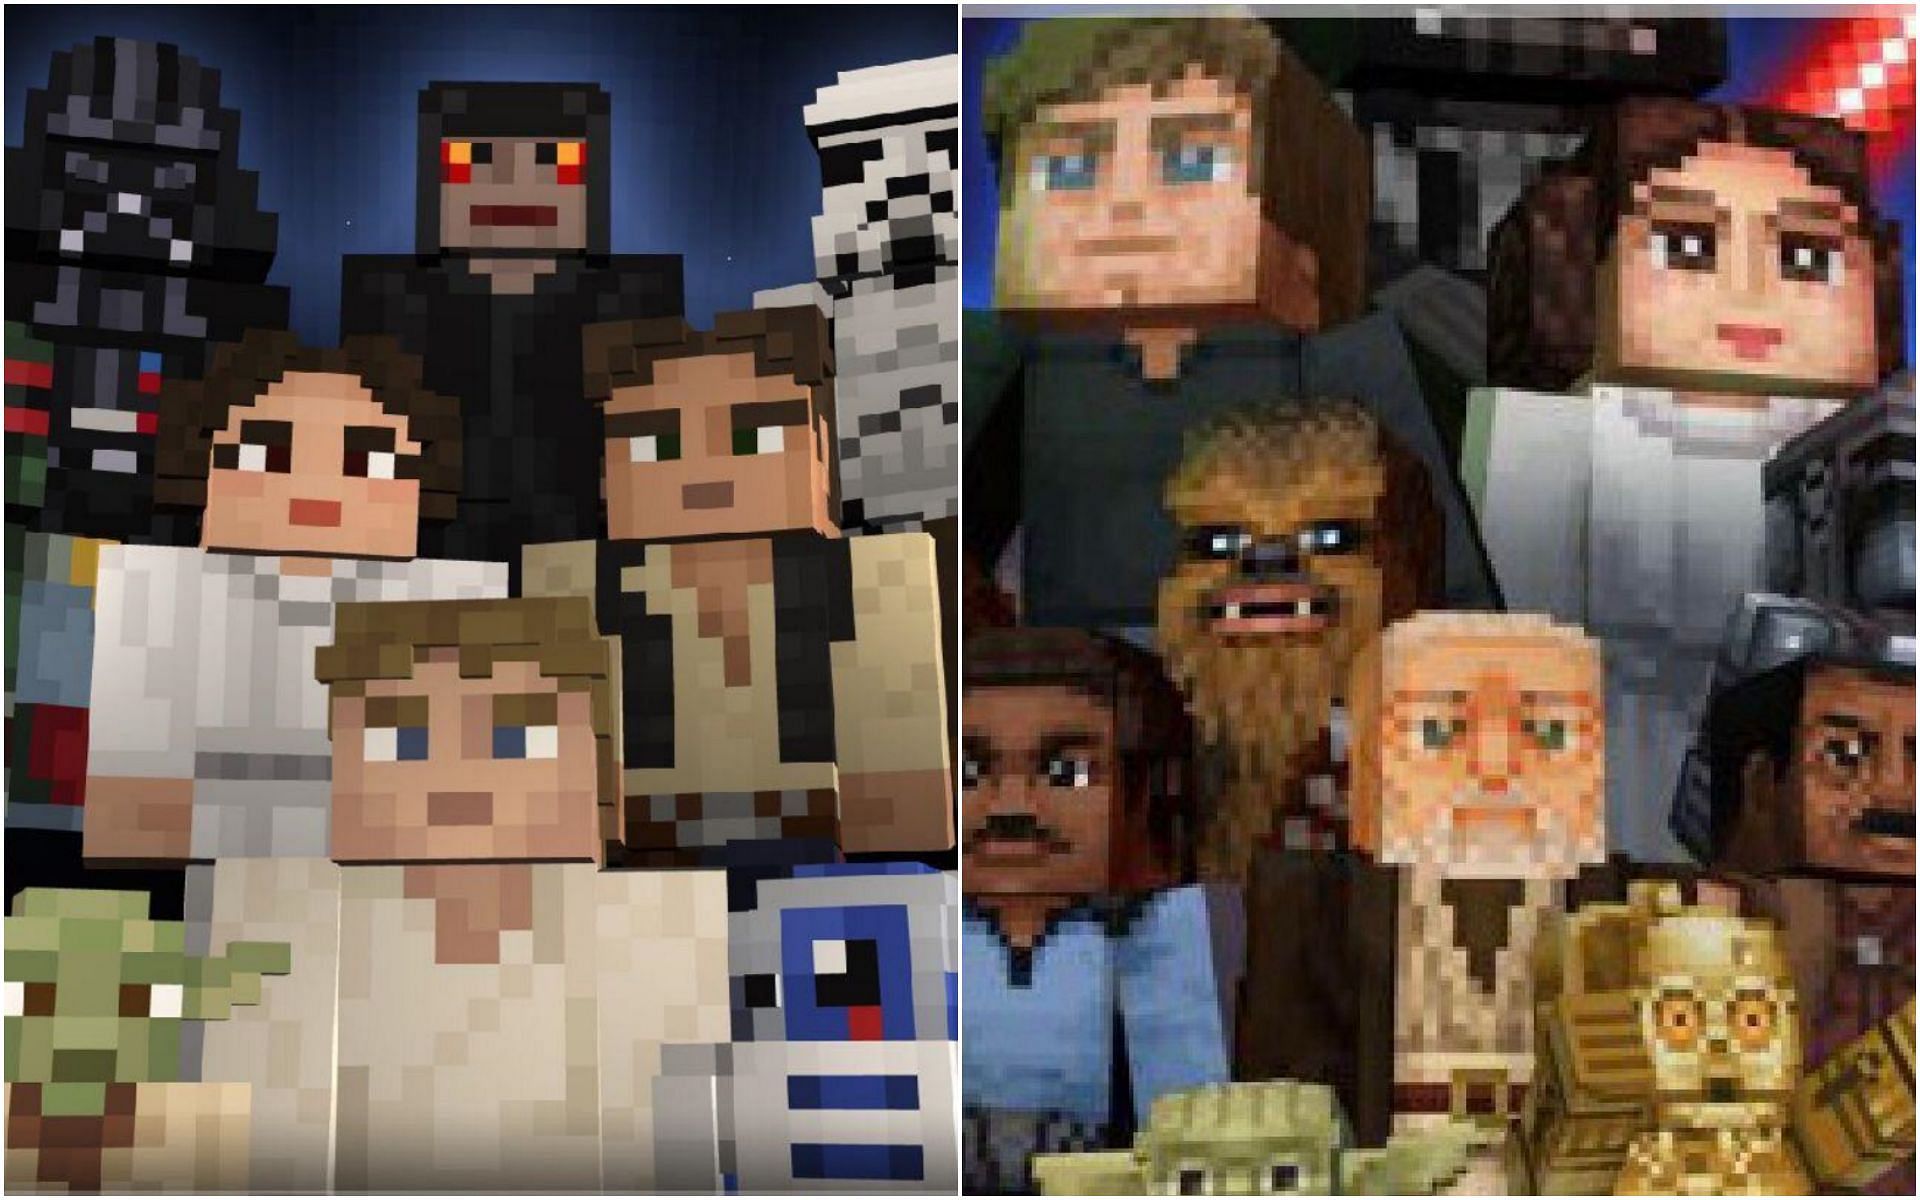 Old vs new Star Wars skin pack in Minecraft (Image via u/AccountUsername04 Reddit)